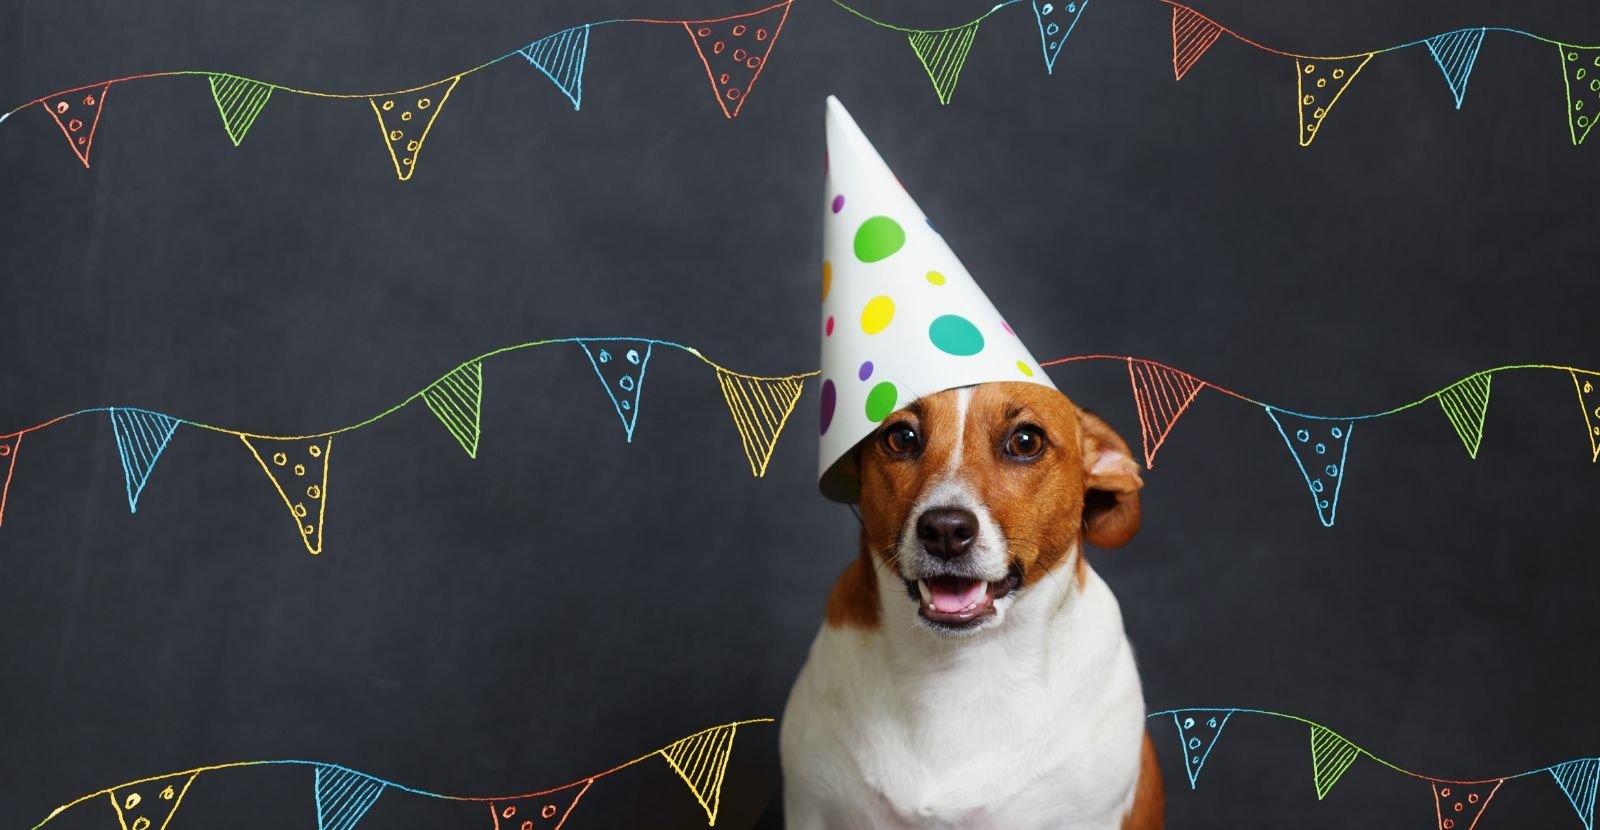 10 Ways to Celebrate Your Dog’s Birthday